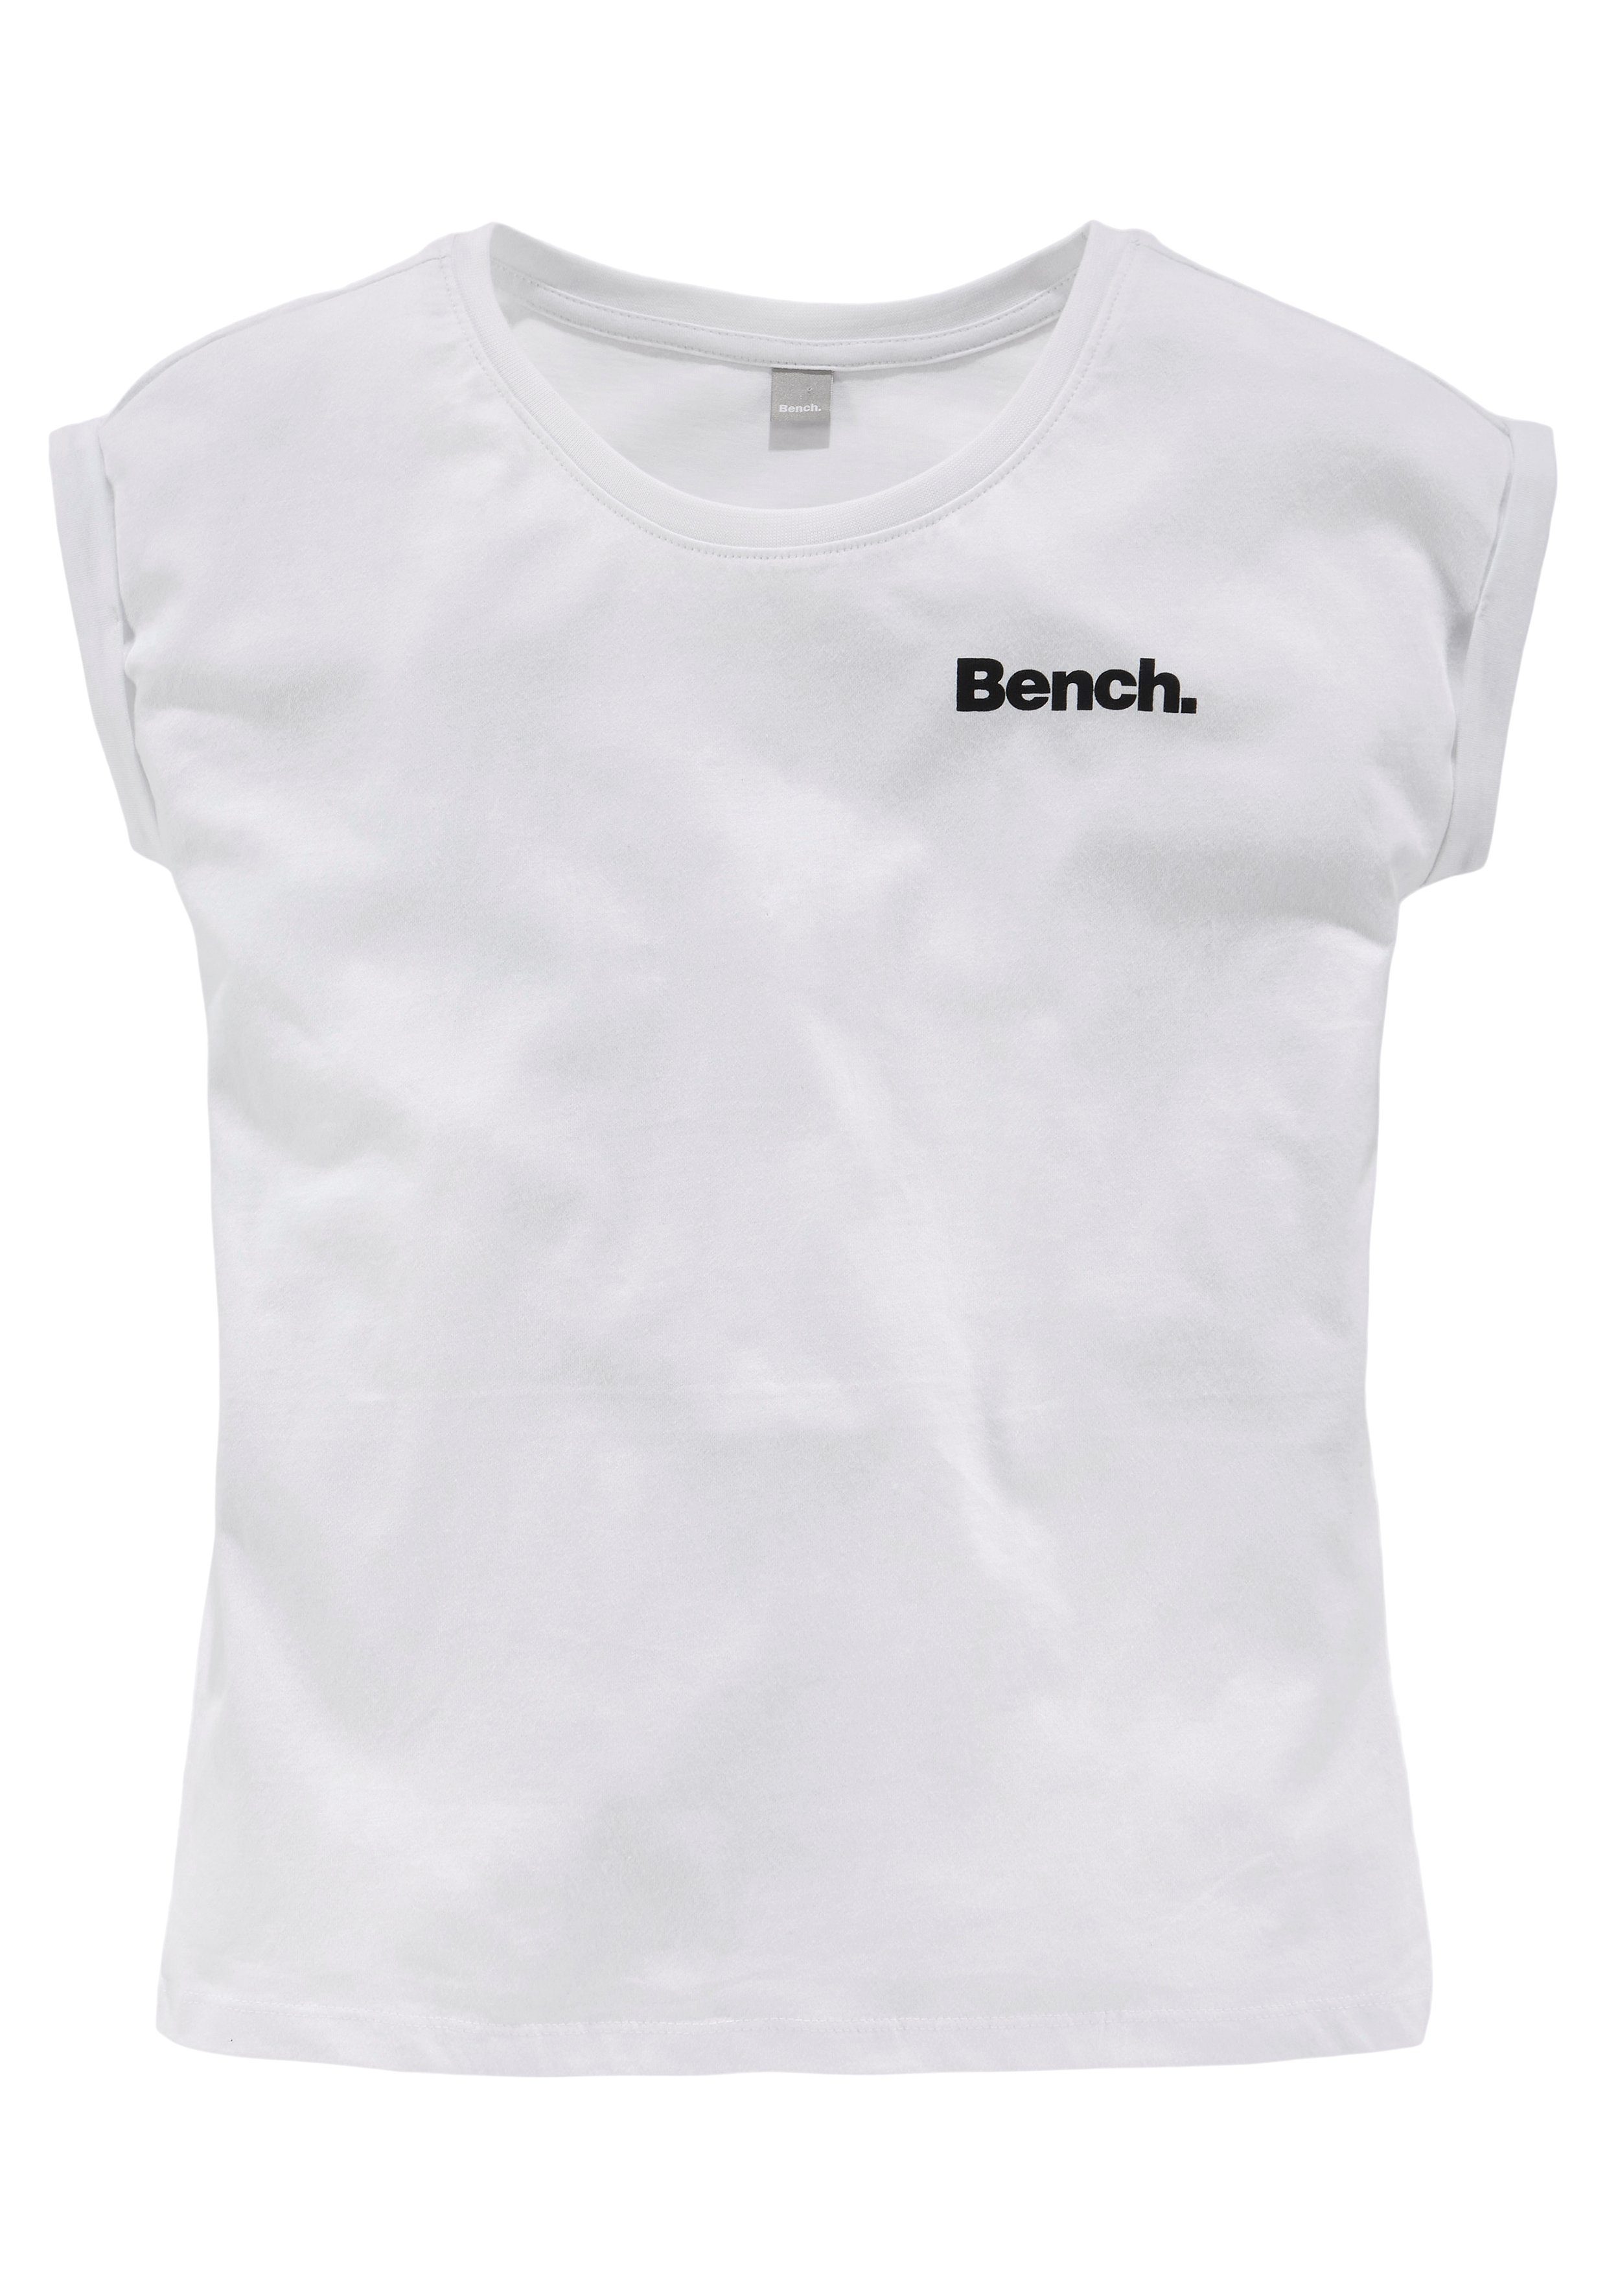 mit T-Shirt Fotodruck Bench.